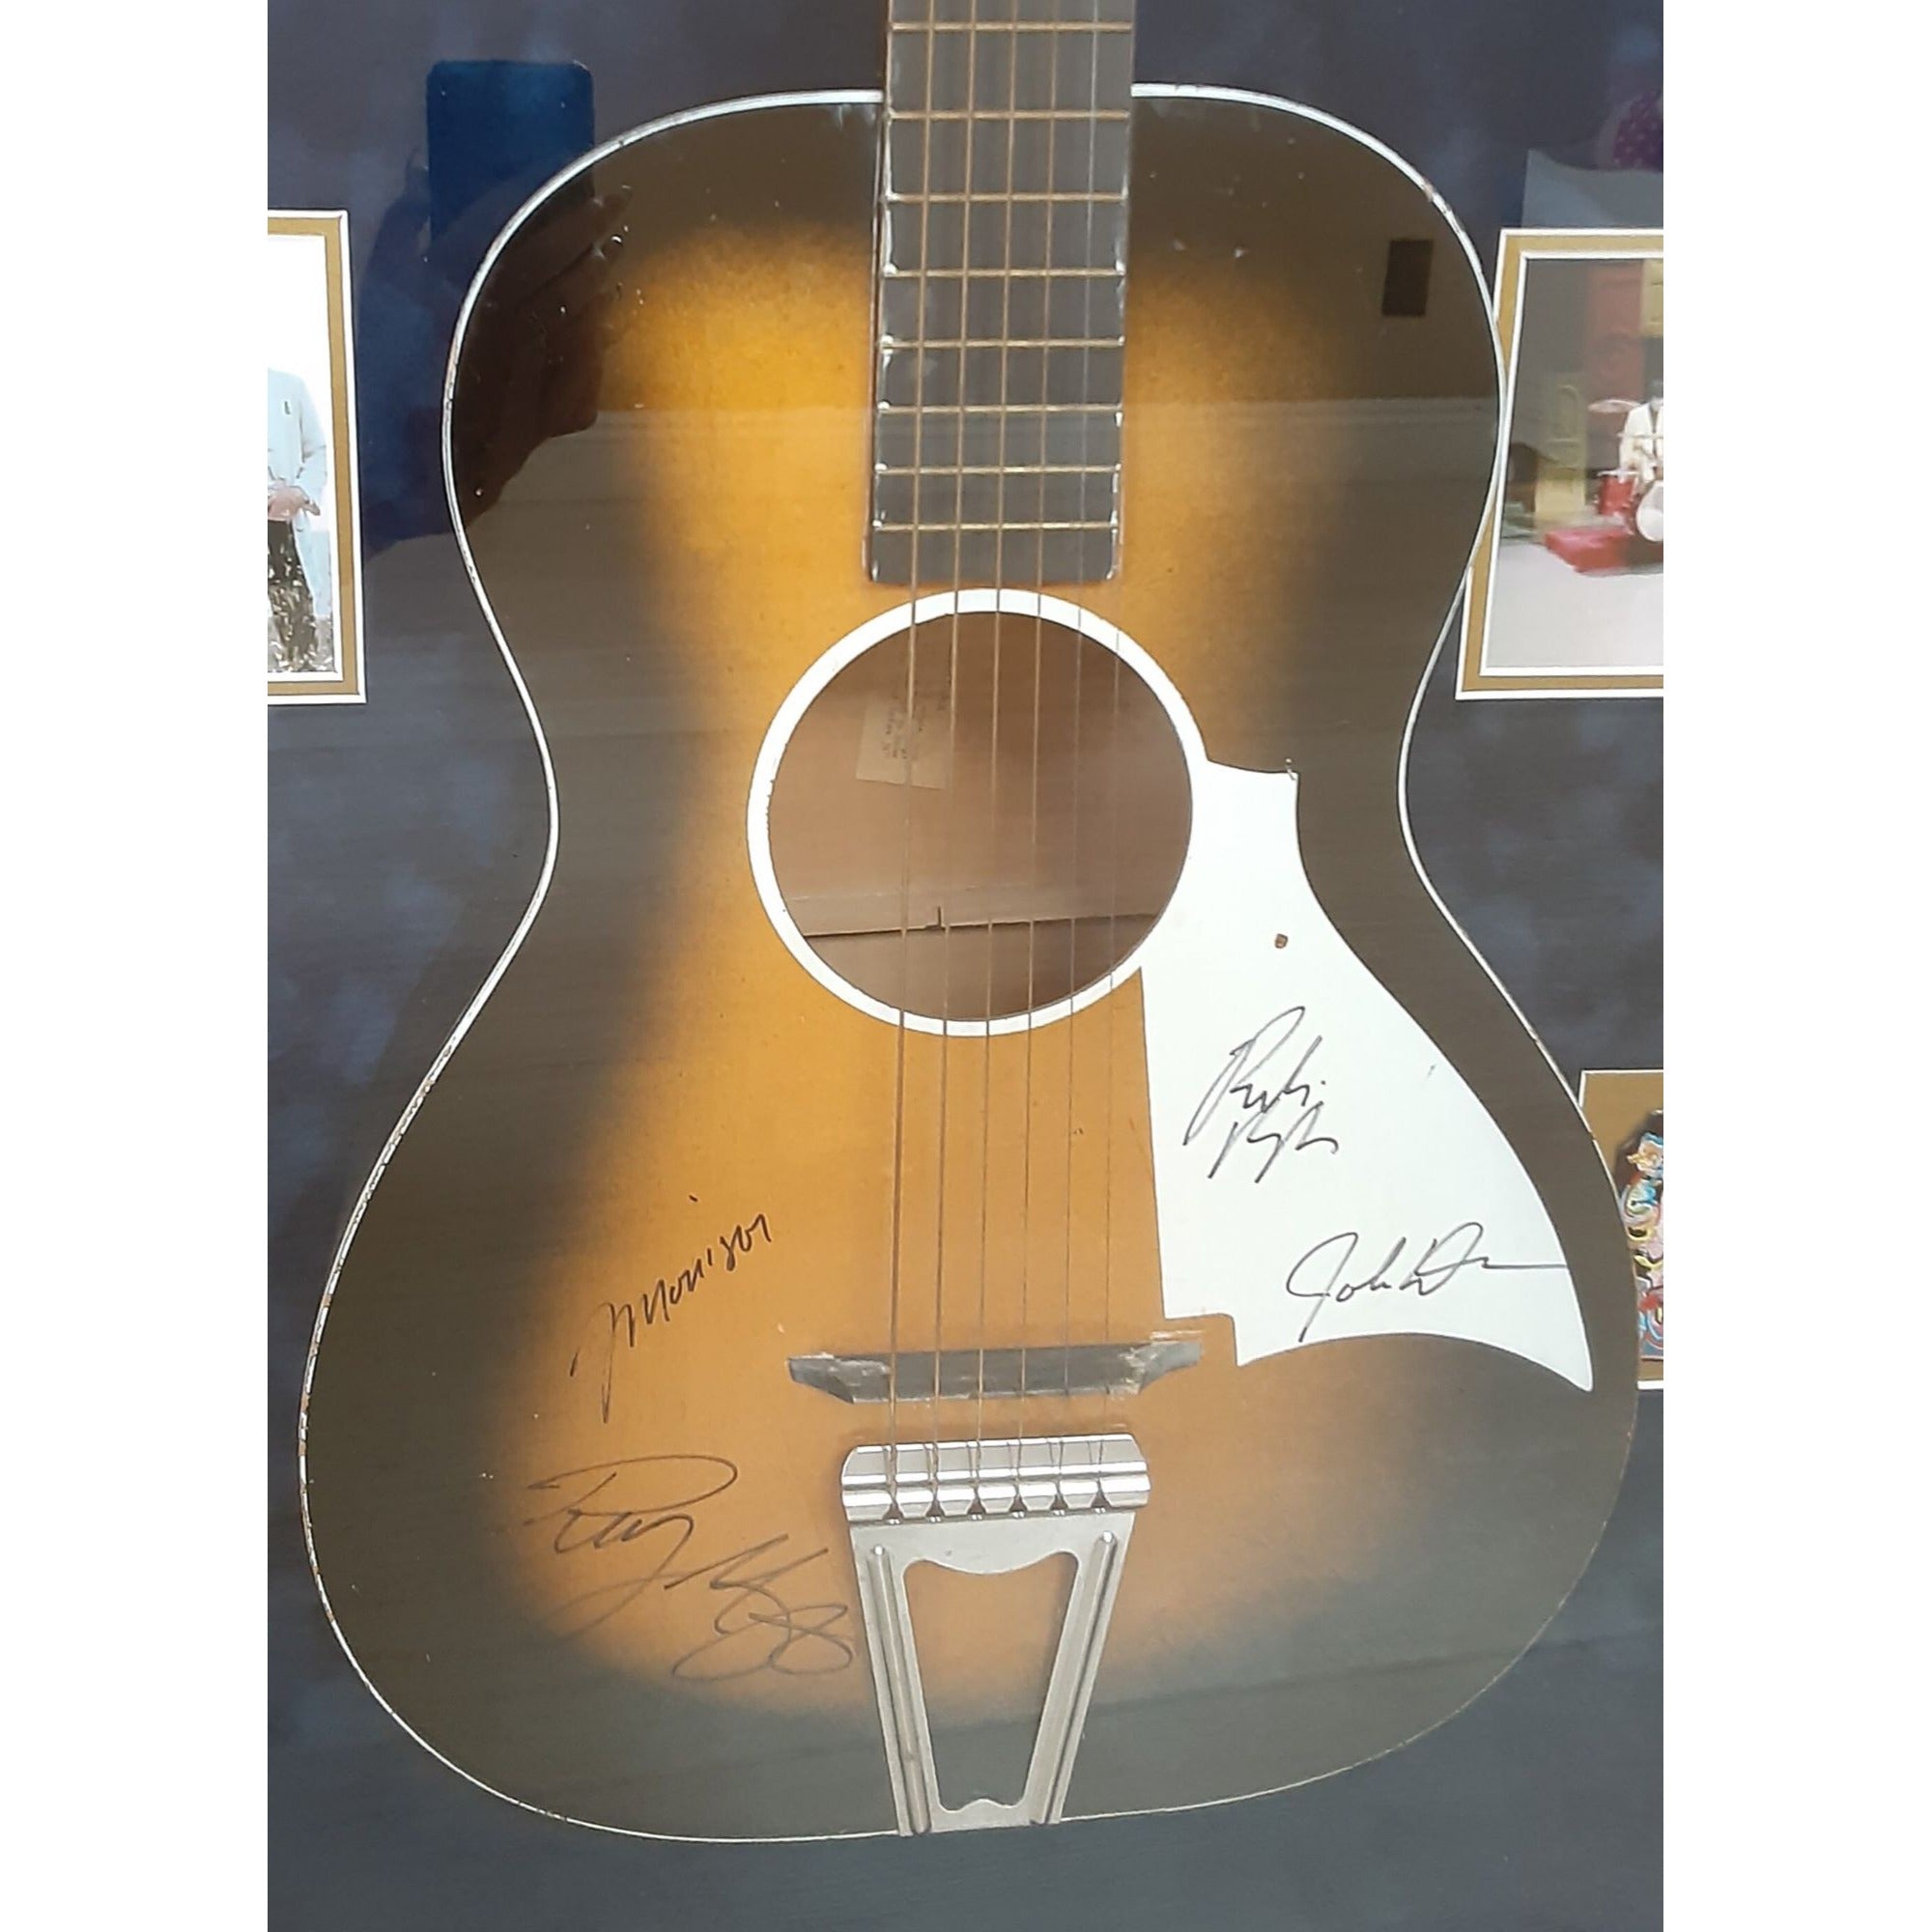 Jim Morrison, Ray Manzarek, Robby Krieger, John Densmore The Doors signed framed guitar